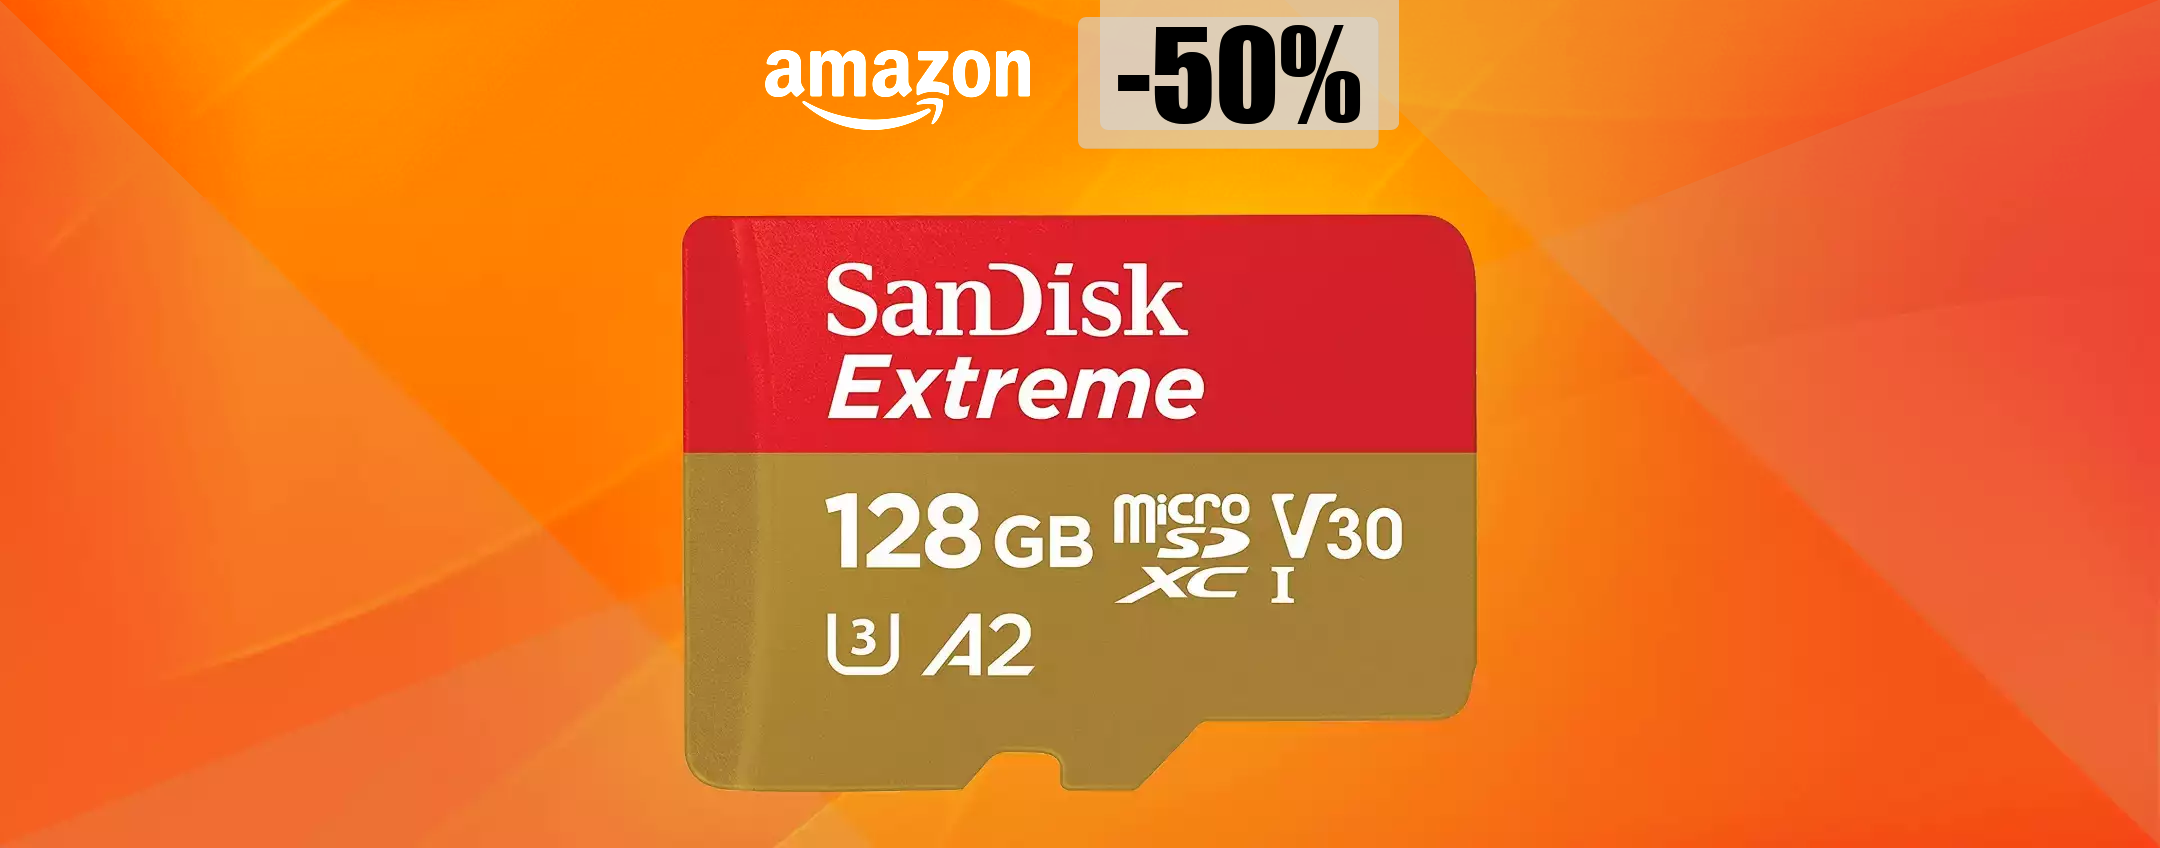 MicroSD 128GB a METÀ PREZZO: un vero portento con appena 32€